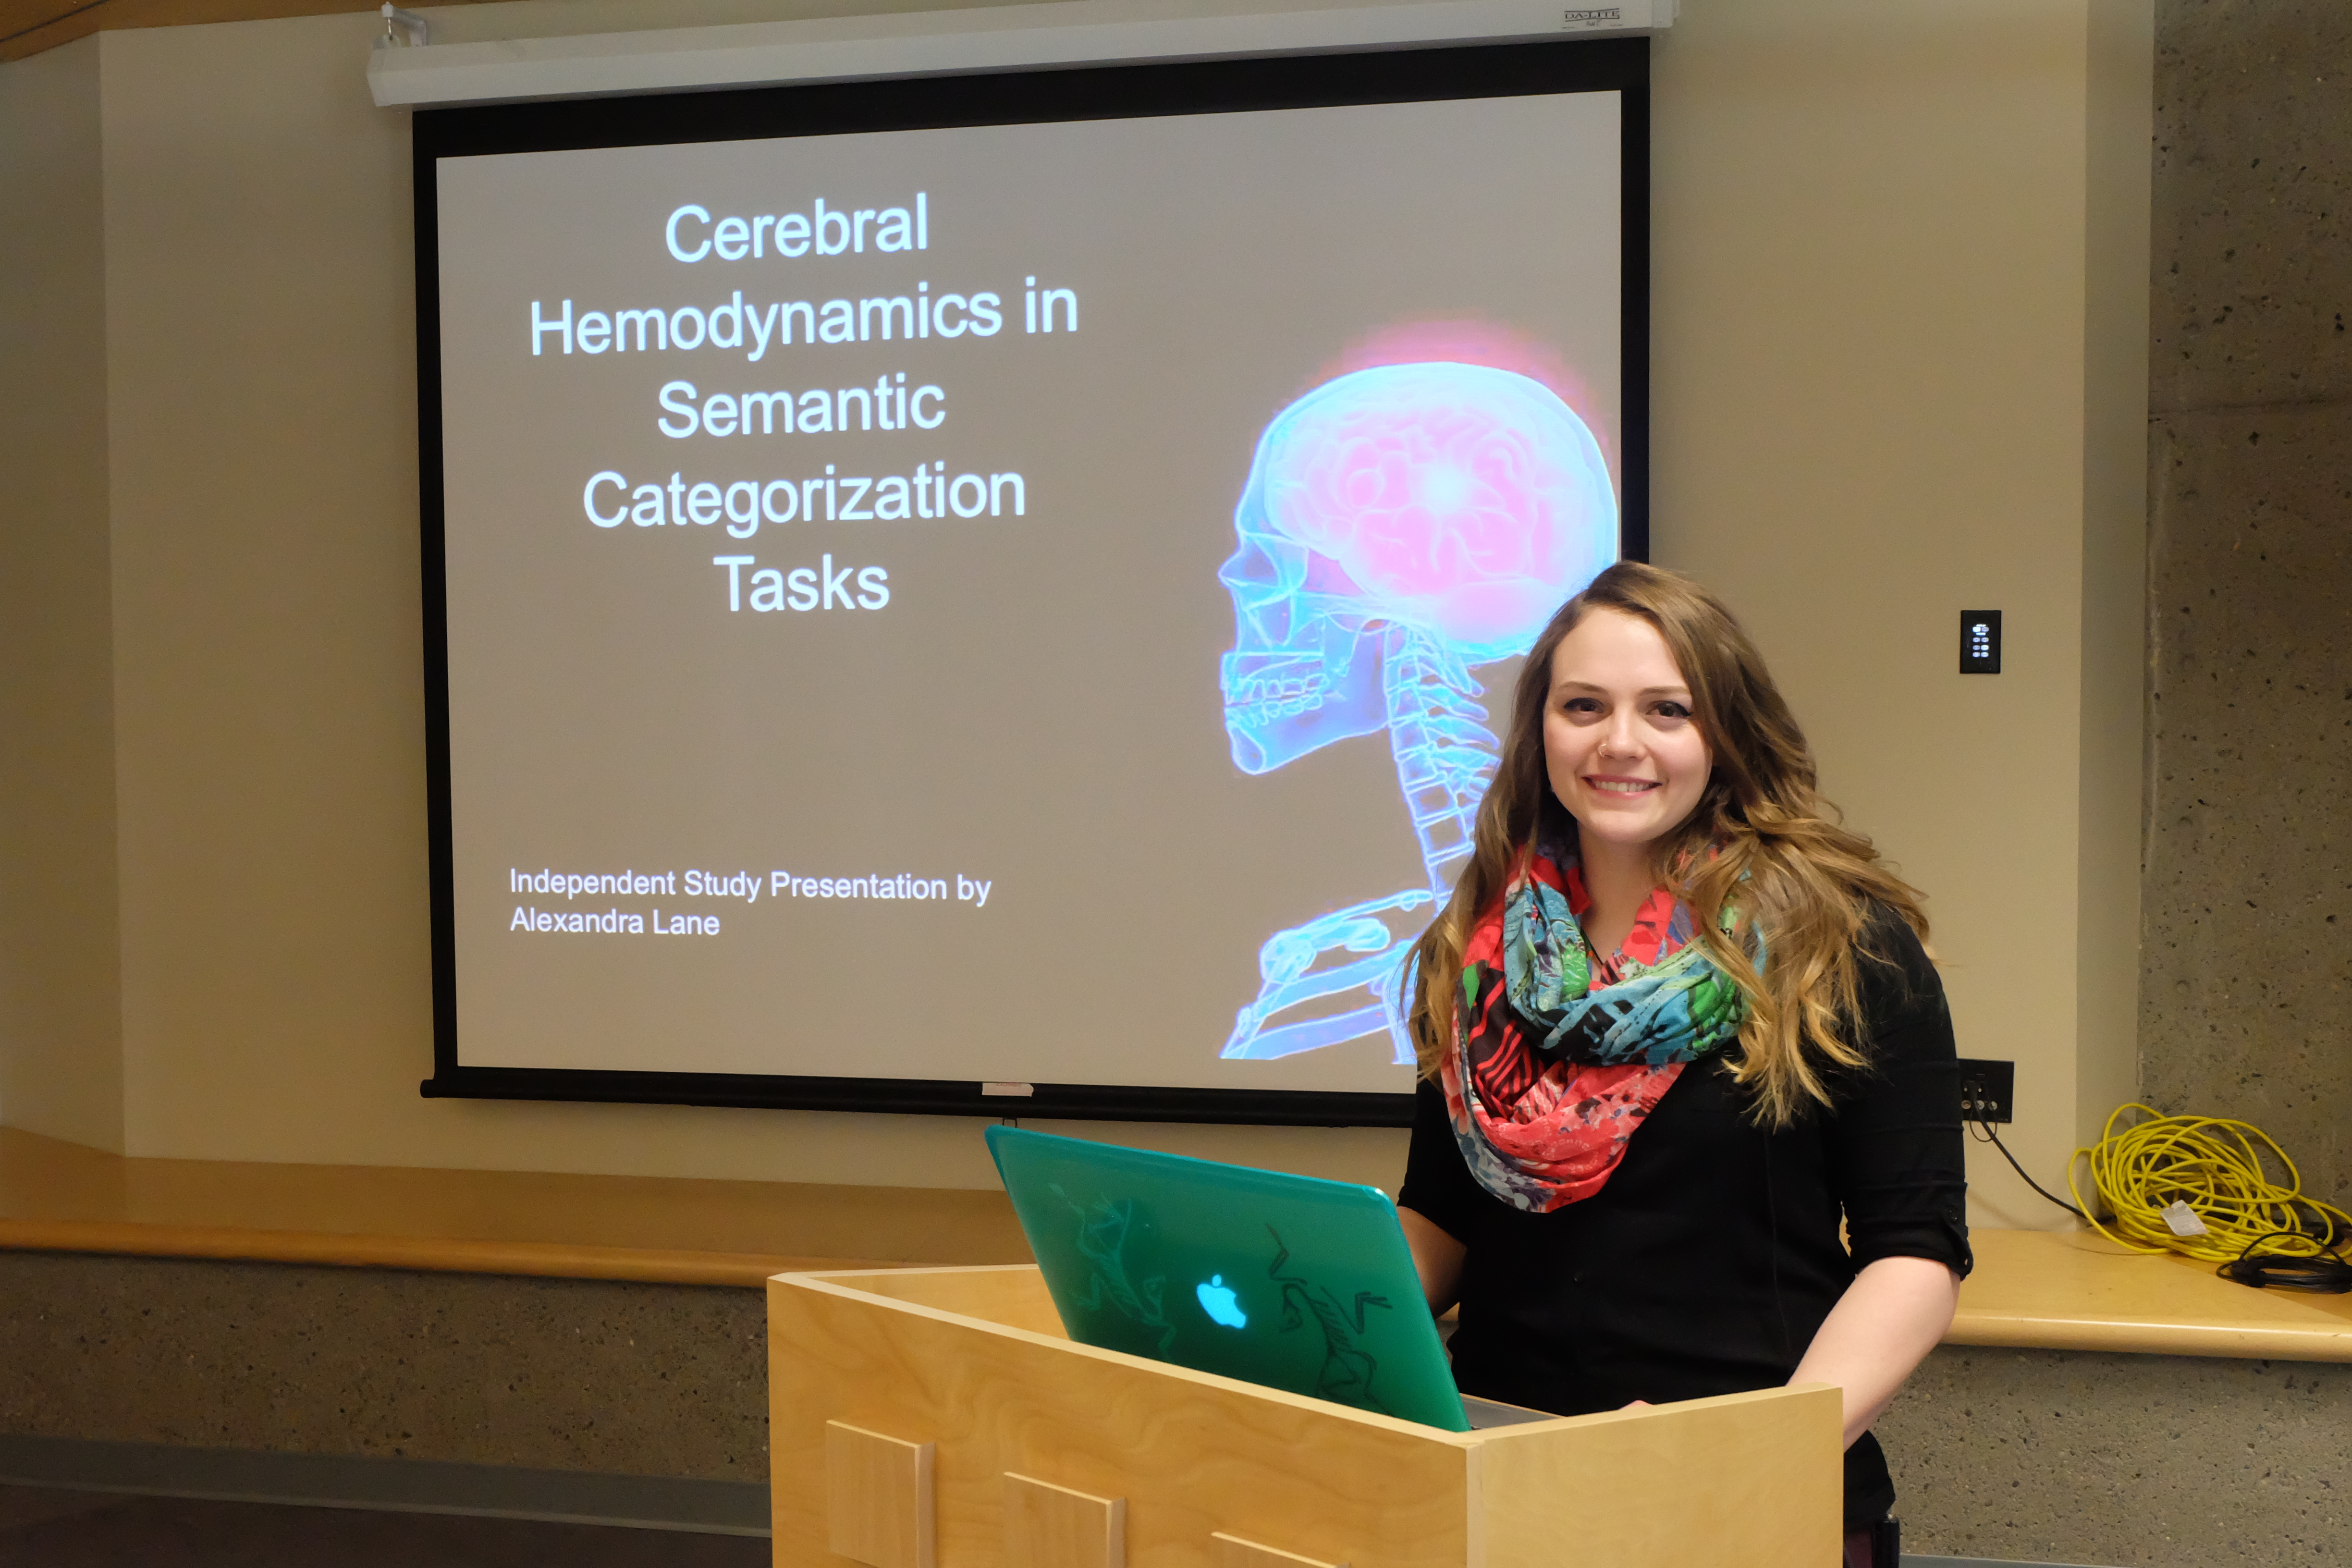 Alexandra Lane presentation 2: Cerebral hemodynamics in semantic categorization tasks